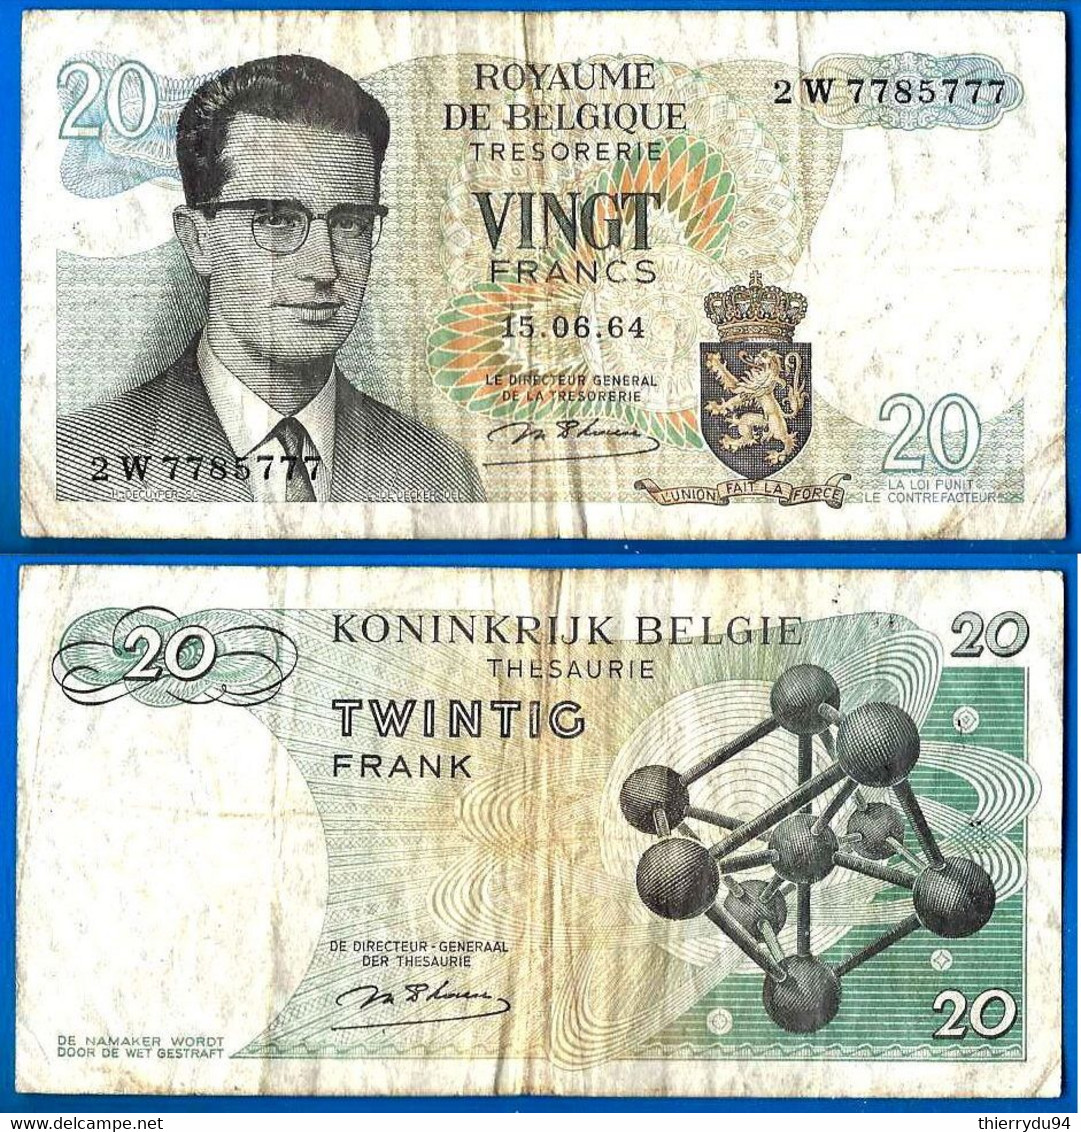 Belgique 20 Francs 1964 Serie 2 W Num 7785777 Que Prix + Port  Frc Frcs Frs Paypal Bitcoin OK - 20 Francos